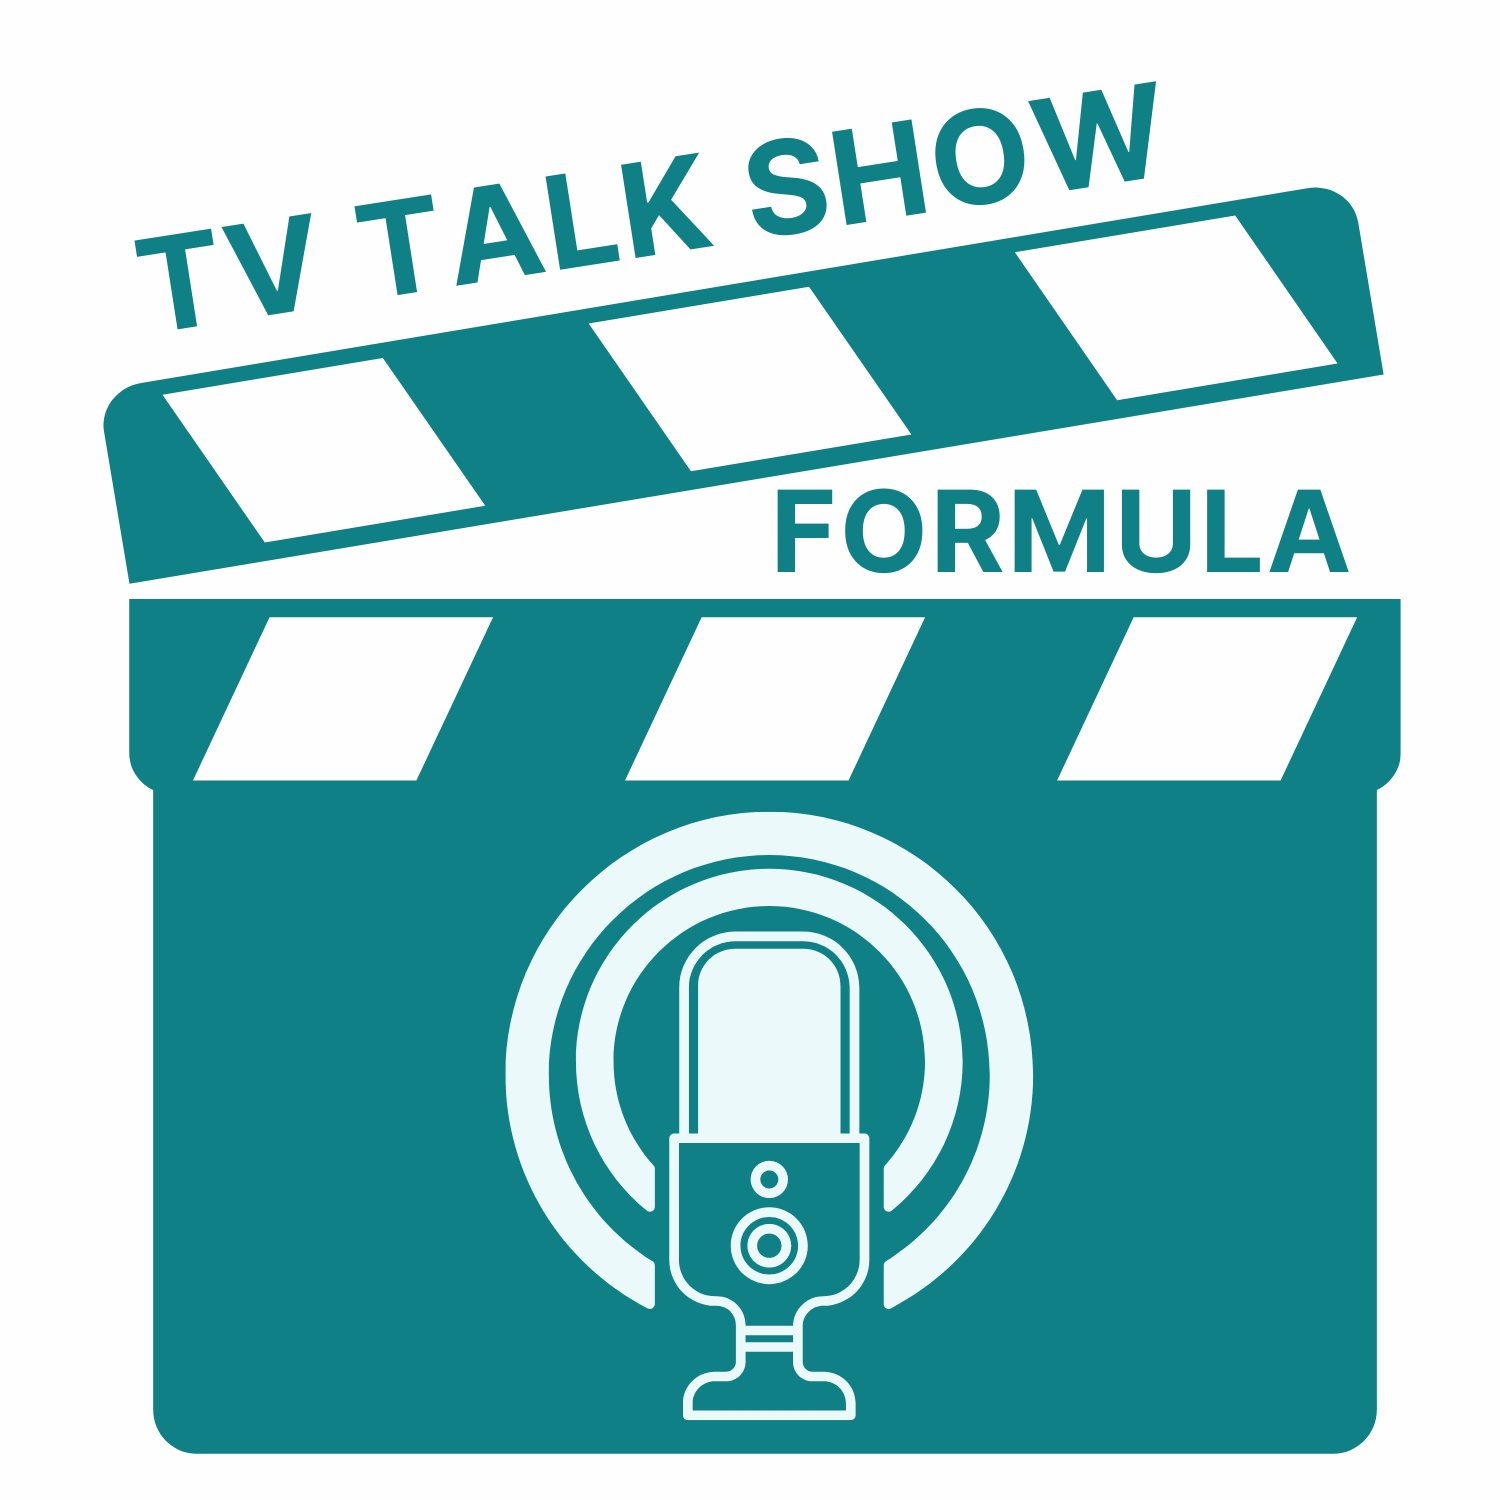 Show artwork for TV Talk Show Formula